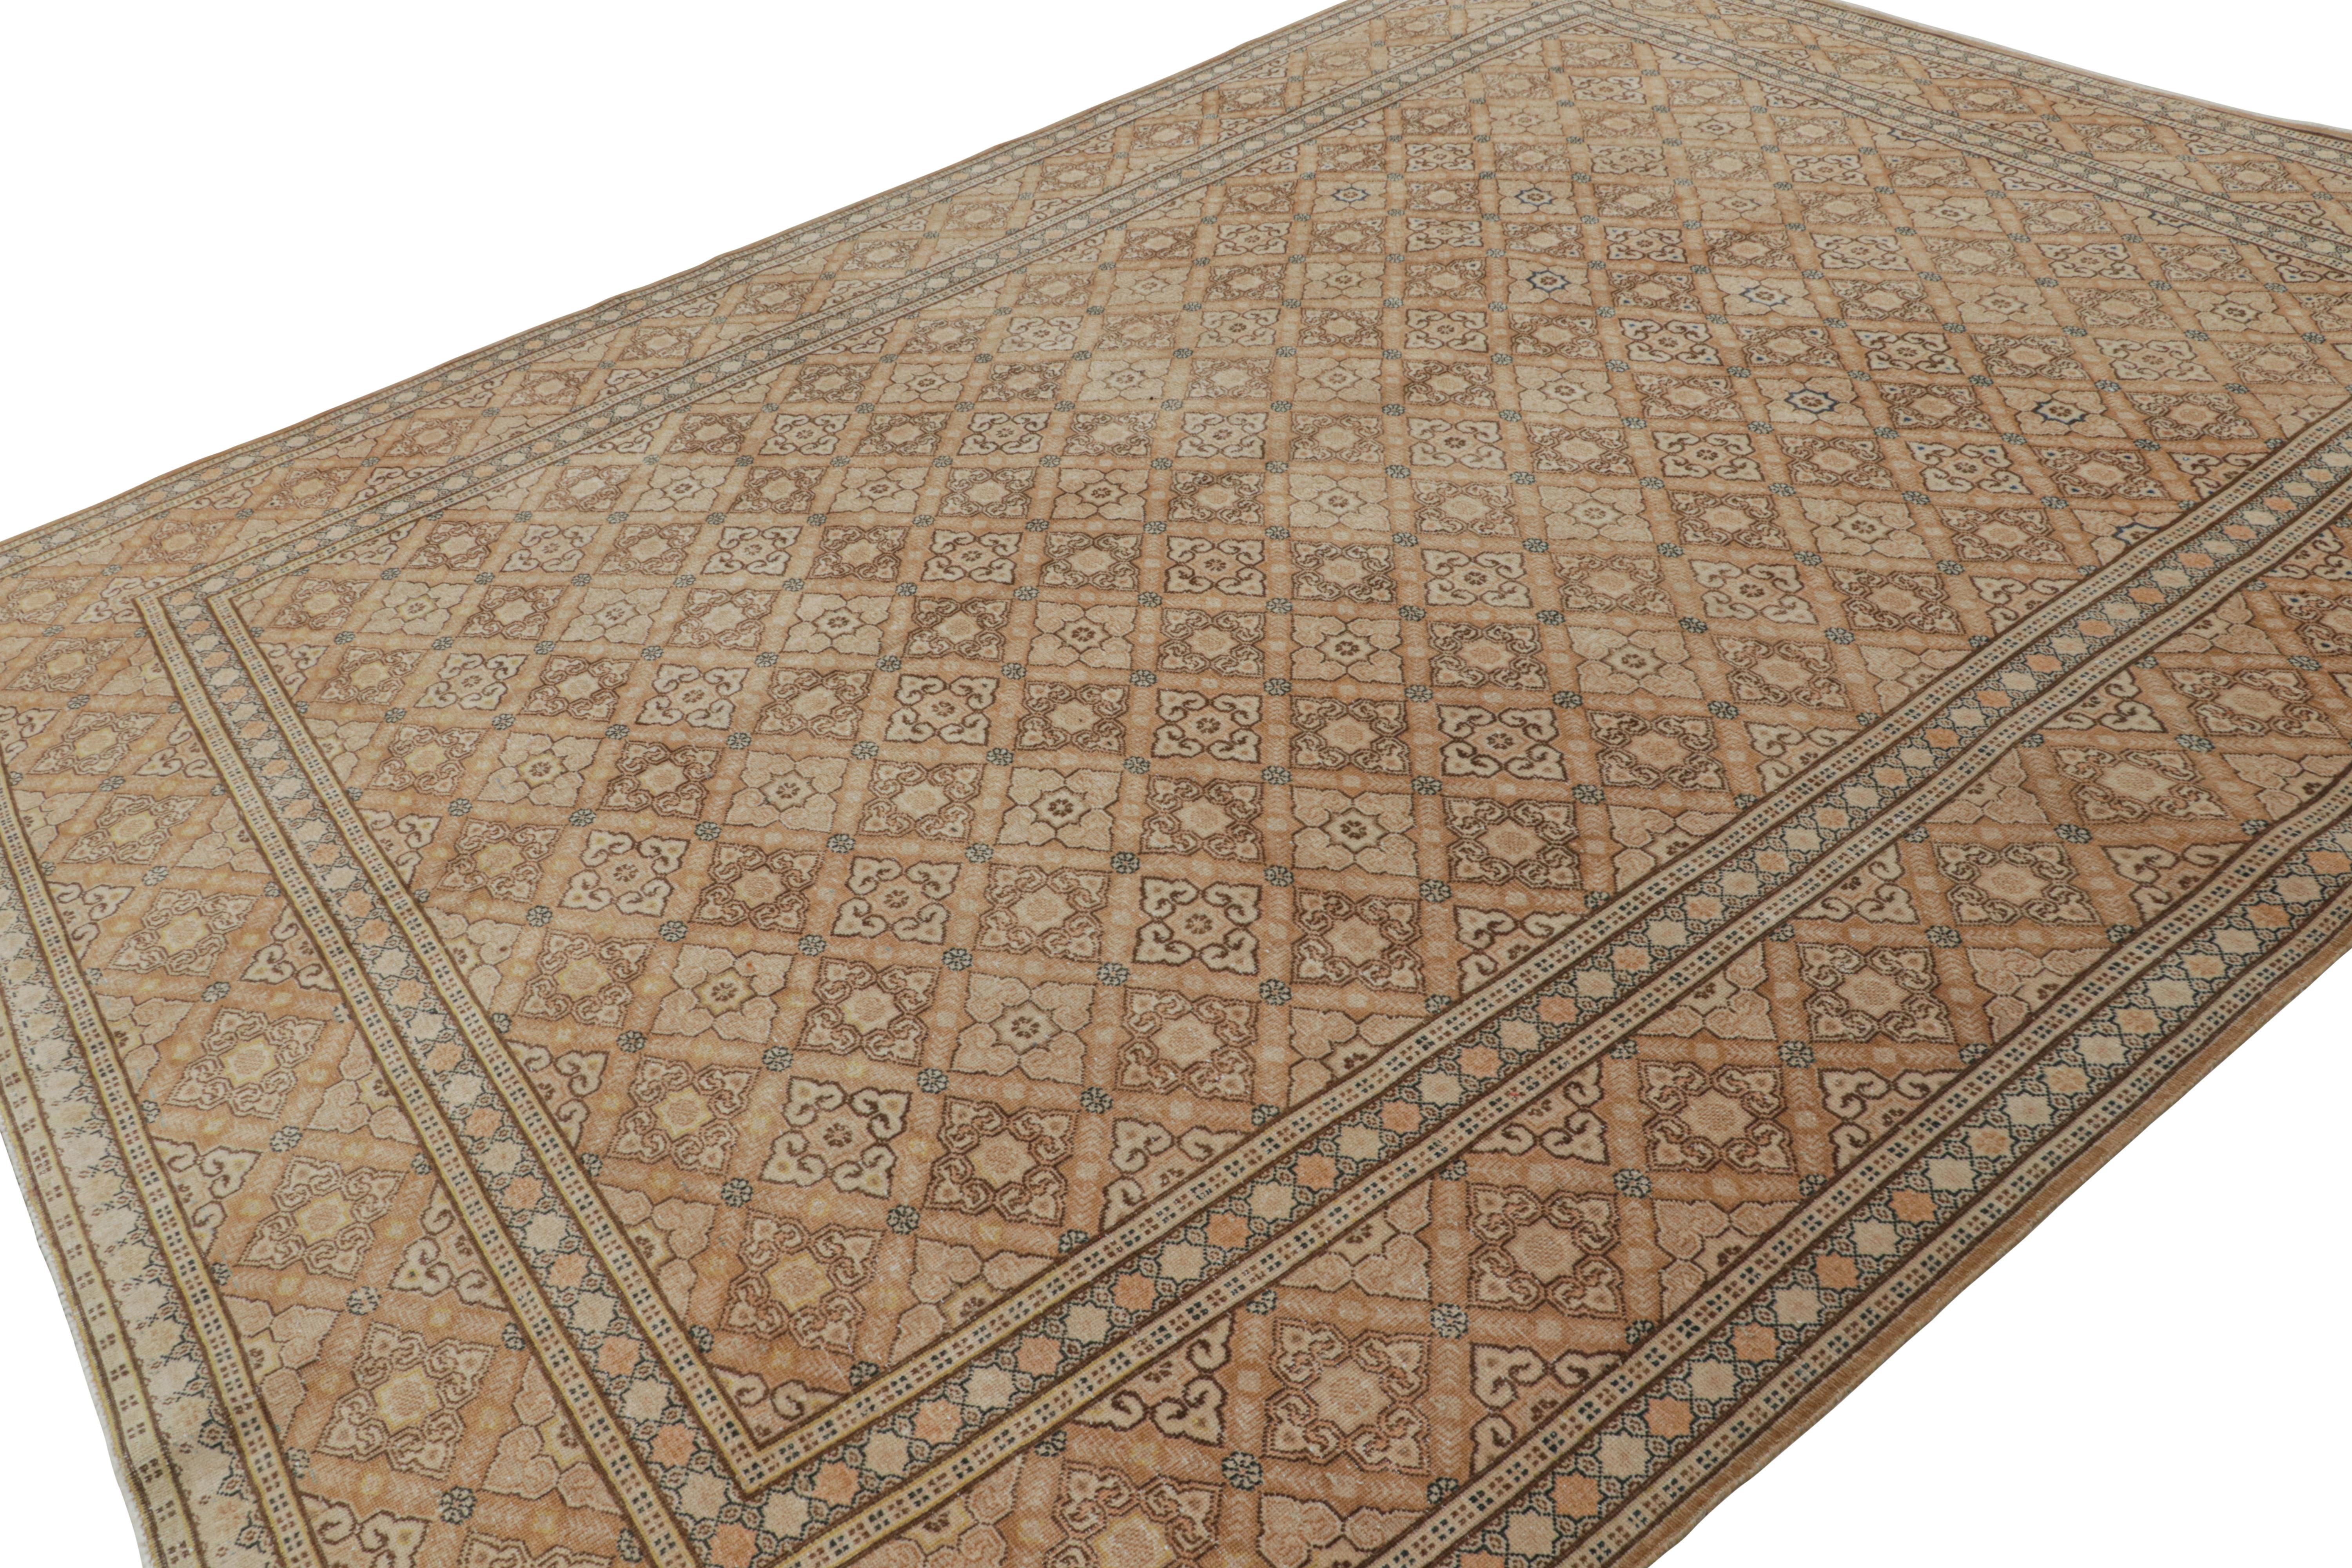 Noué à la main dans une laine luxueuse, ce tapis persan Tabriz vintage 9x13 présente un riche design de motifs floraux répétitifs dans des tons de terracotta, beige/marron et bleu. 

Sur le design :

Les connaisseurs admireront le sens de la